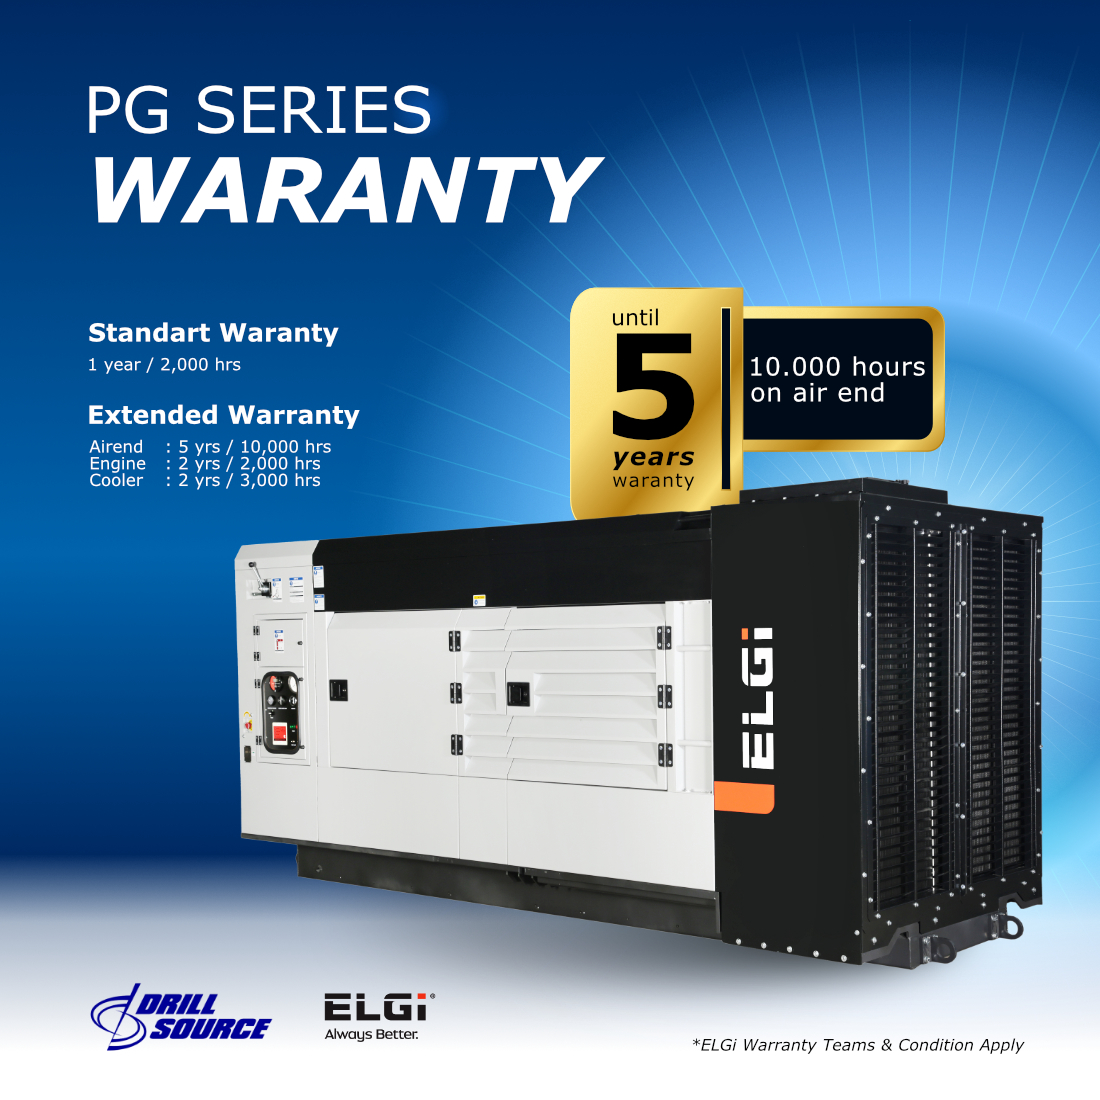 PG Series Warranty